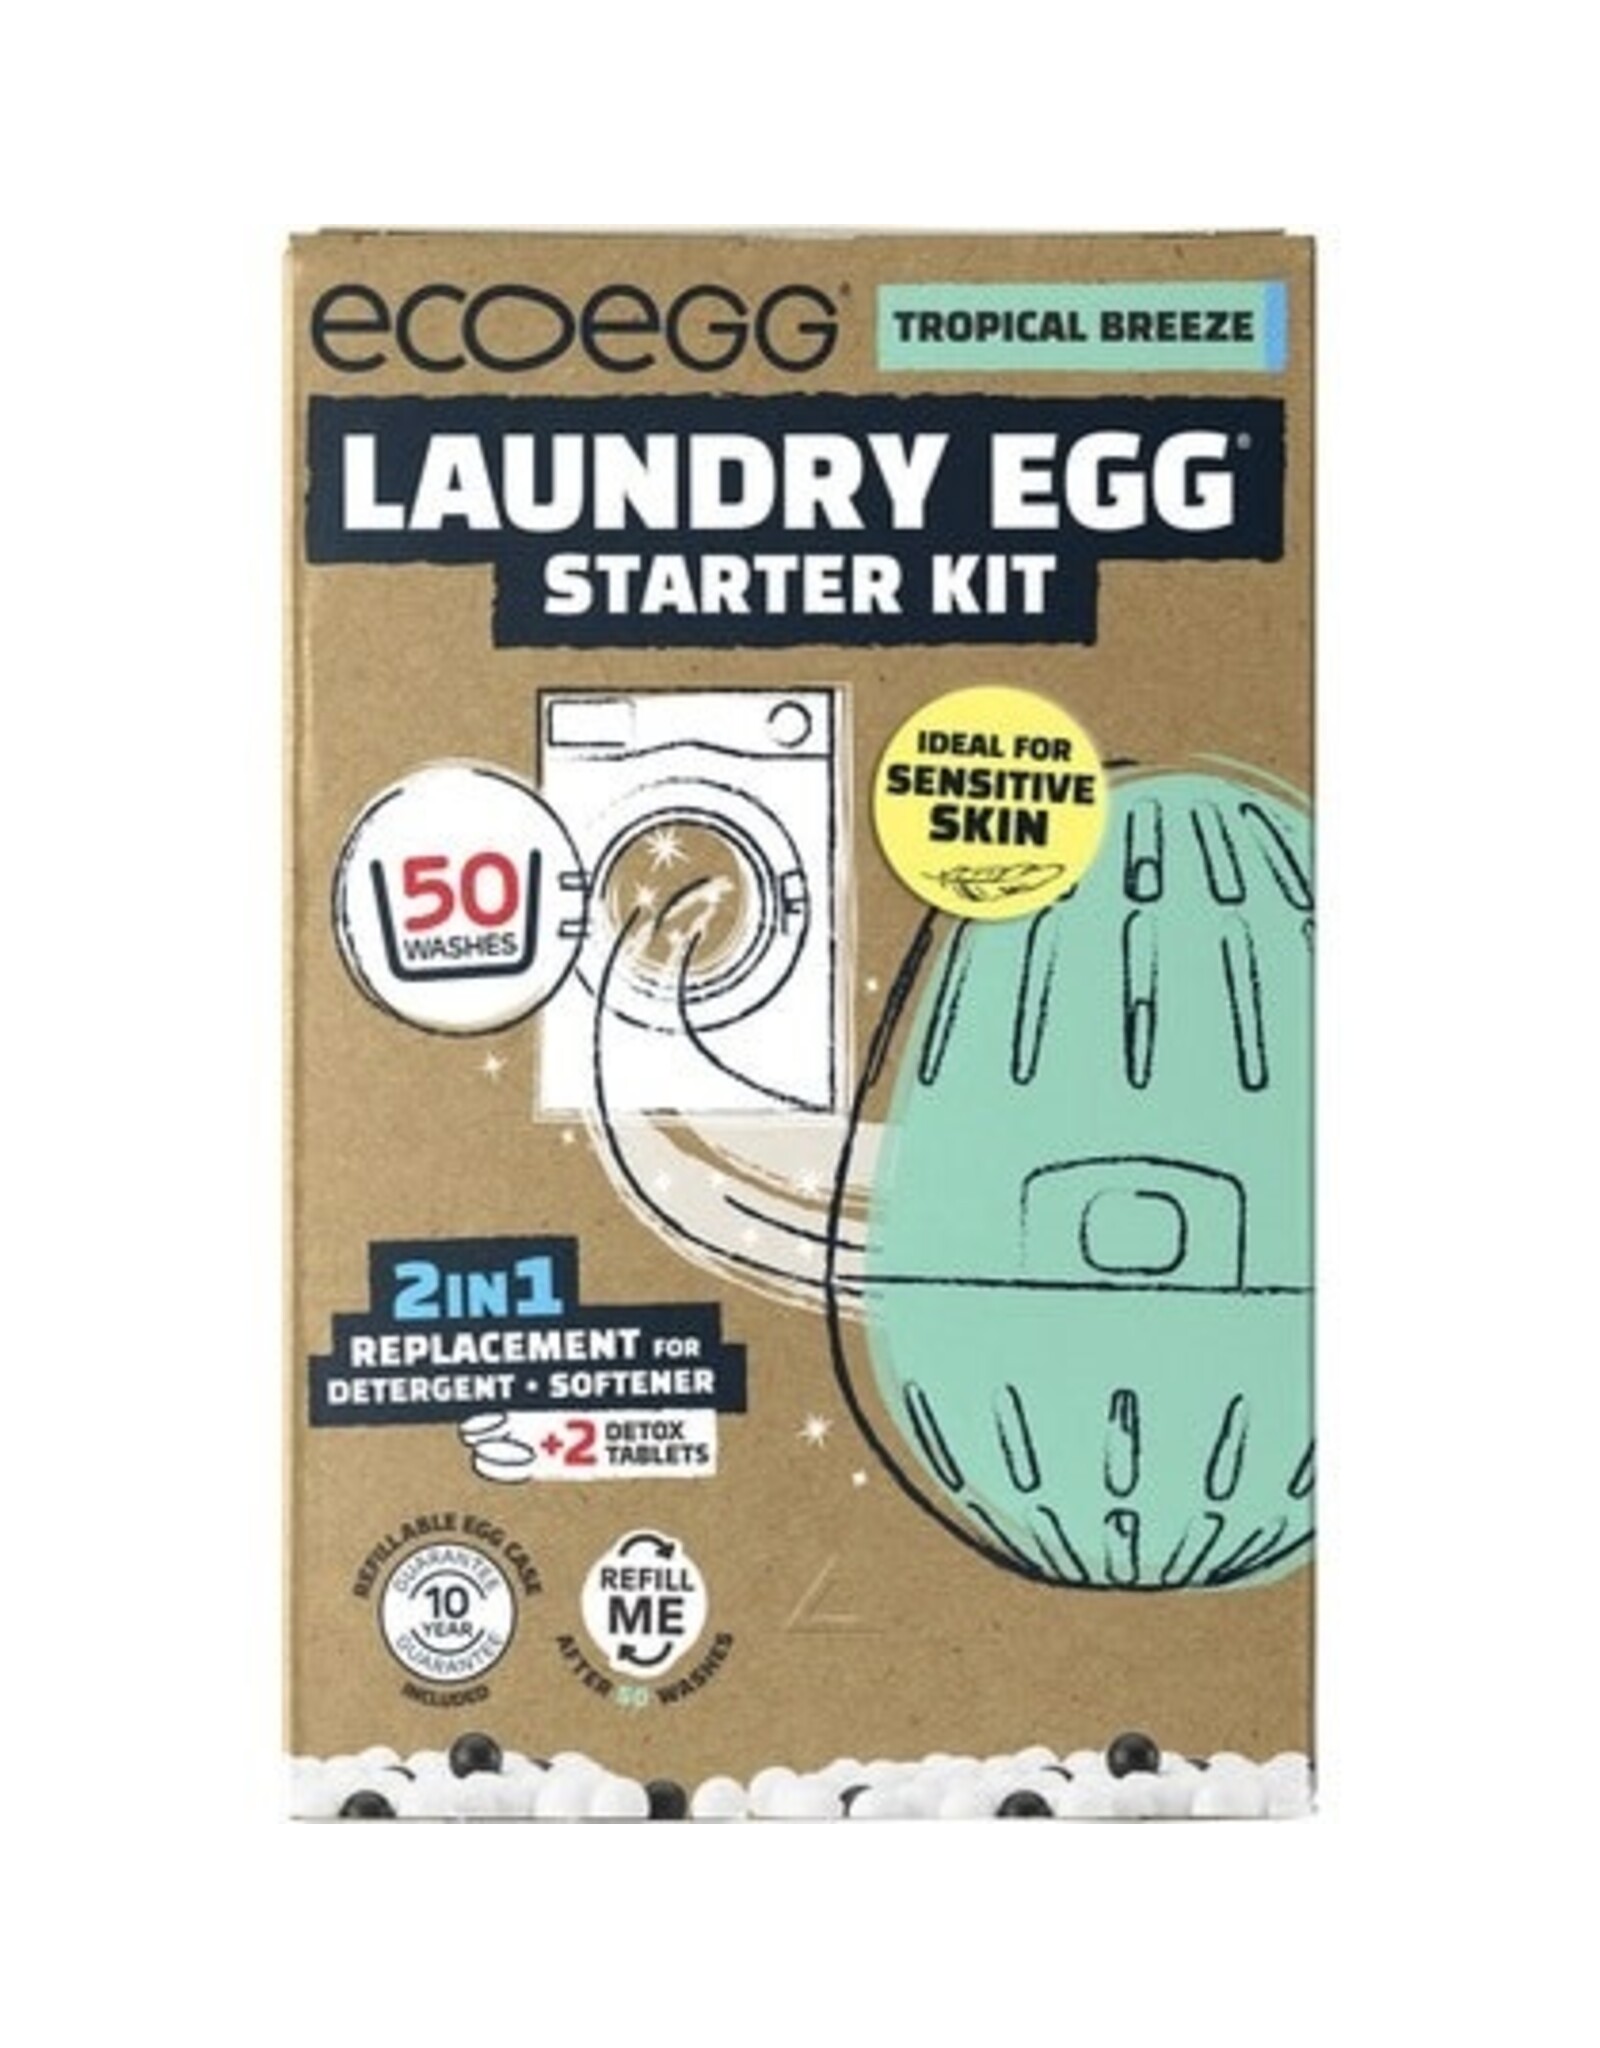 Ecoegg Laundry Egg Starter Kit 50 Washes Tropical Breeze